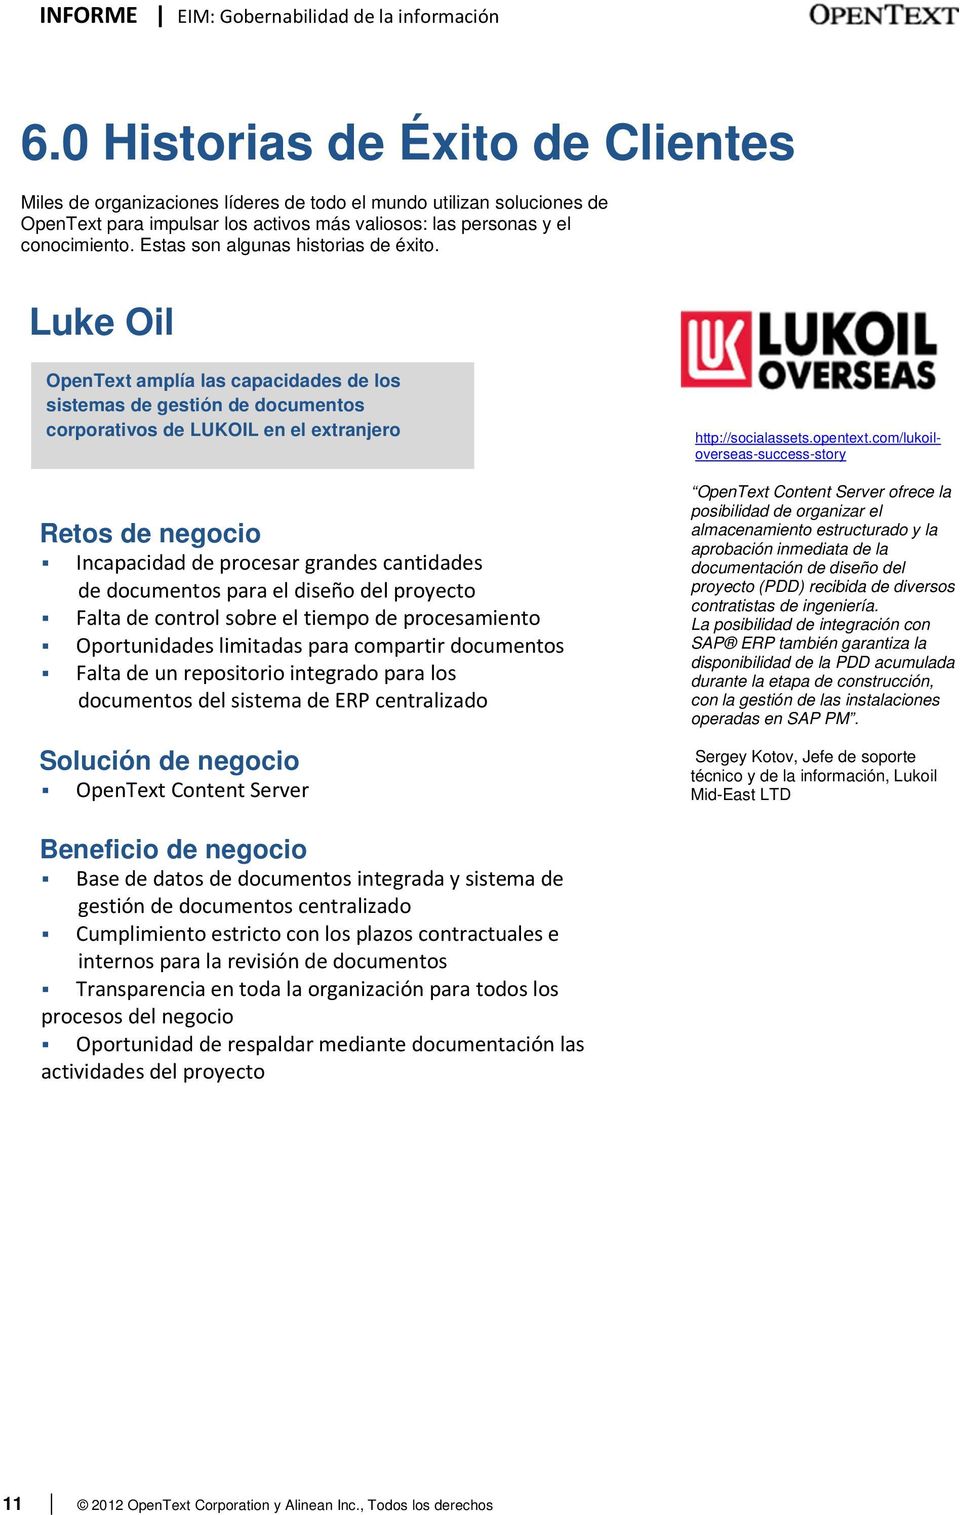 Luke Oil OpenText amplía las capacidades de los sistemas de gestión de documentos corporativos de LUKOIL en el extranjero Retos de negocio Incapacidad de procesar grandes cantidades de documentos